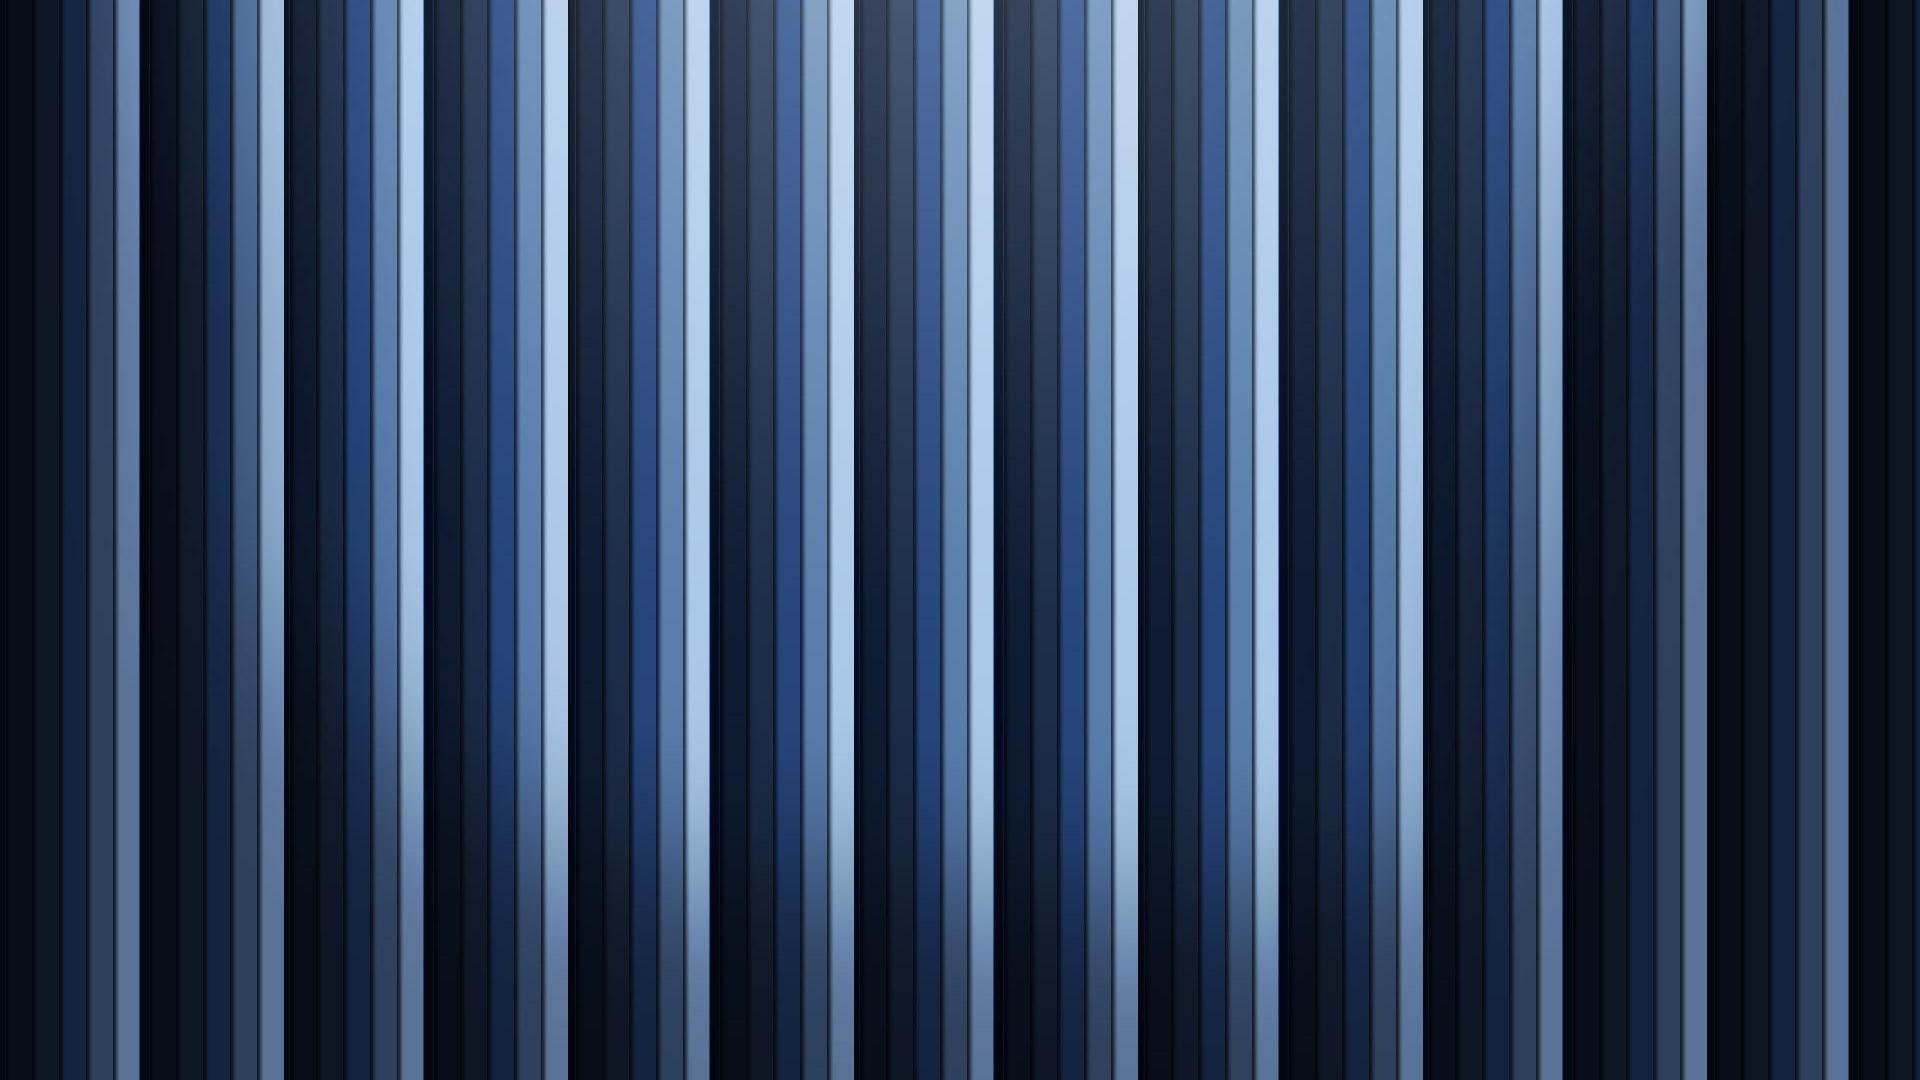 Black Stripes Wallpaper Blue Blues Desktop Striped